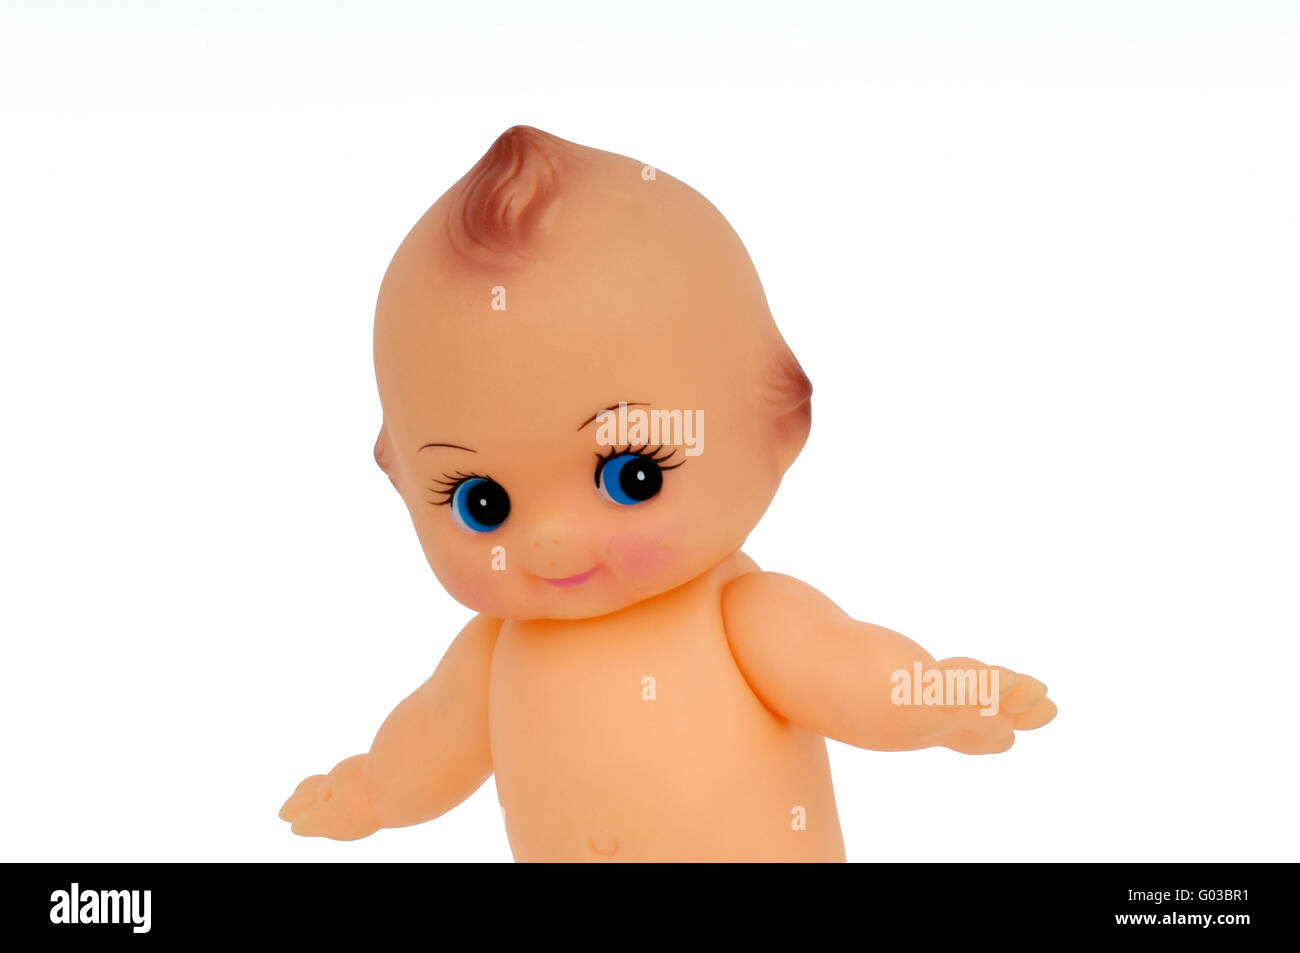 Kewpie doll on white background Stock Photo